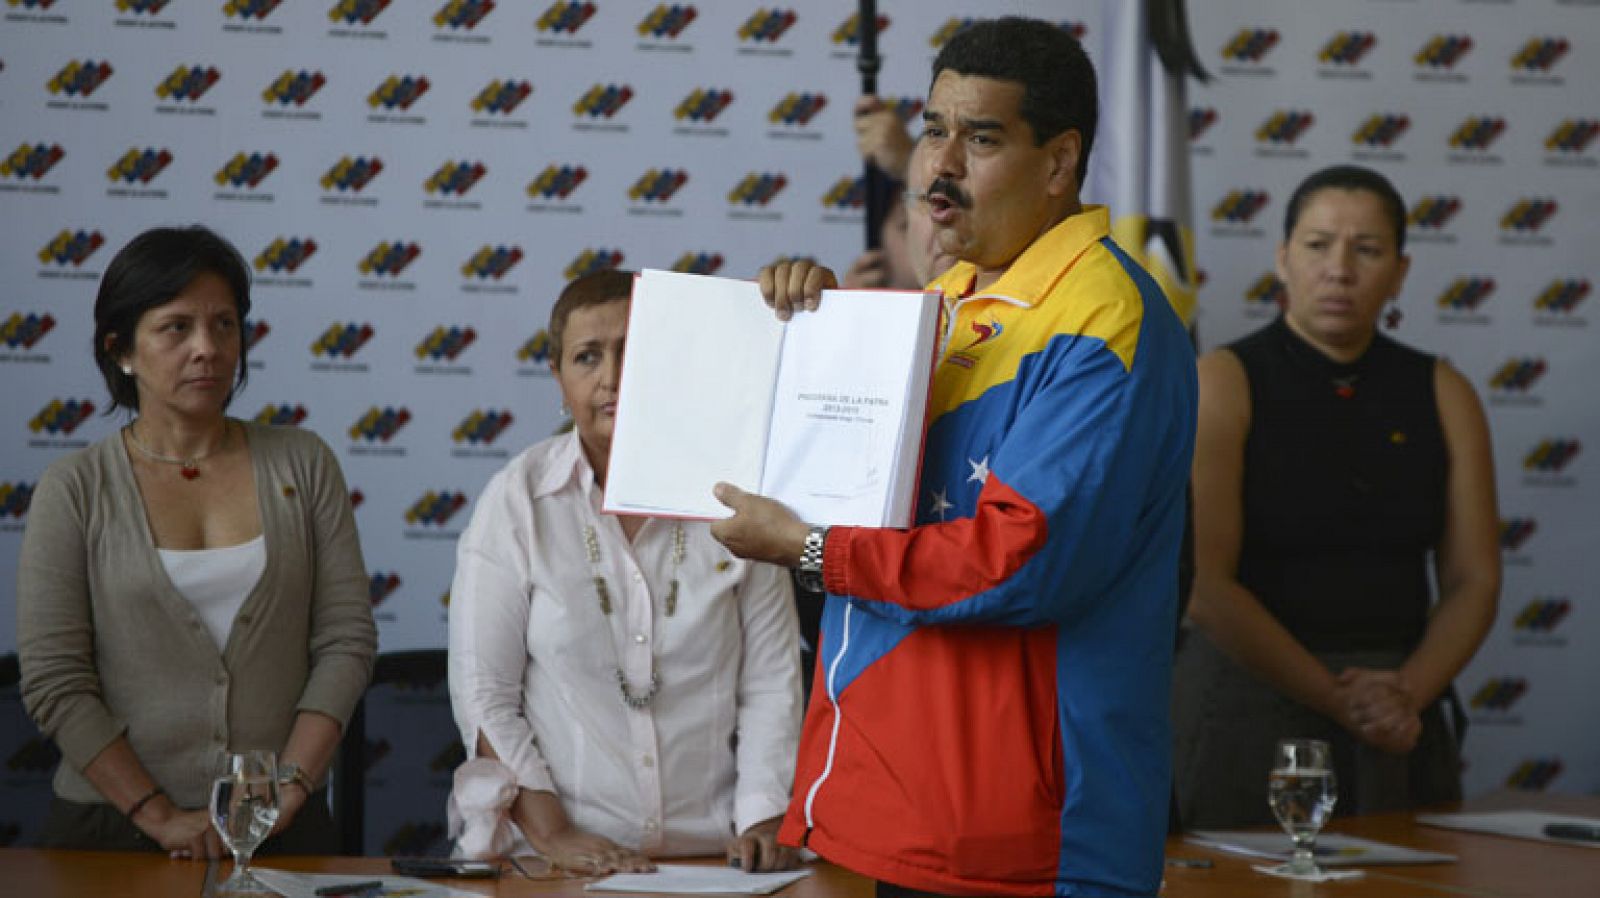 Telediario 1: Nicolás Maduro presenta su candidatura a la presidencia como "hijo de Chávez" | RTVE Play